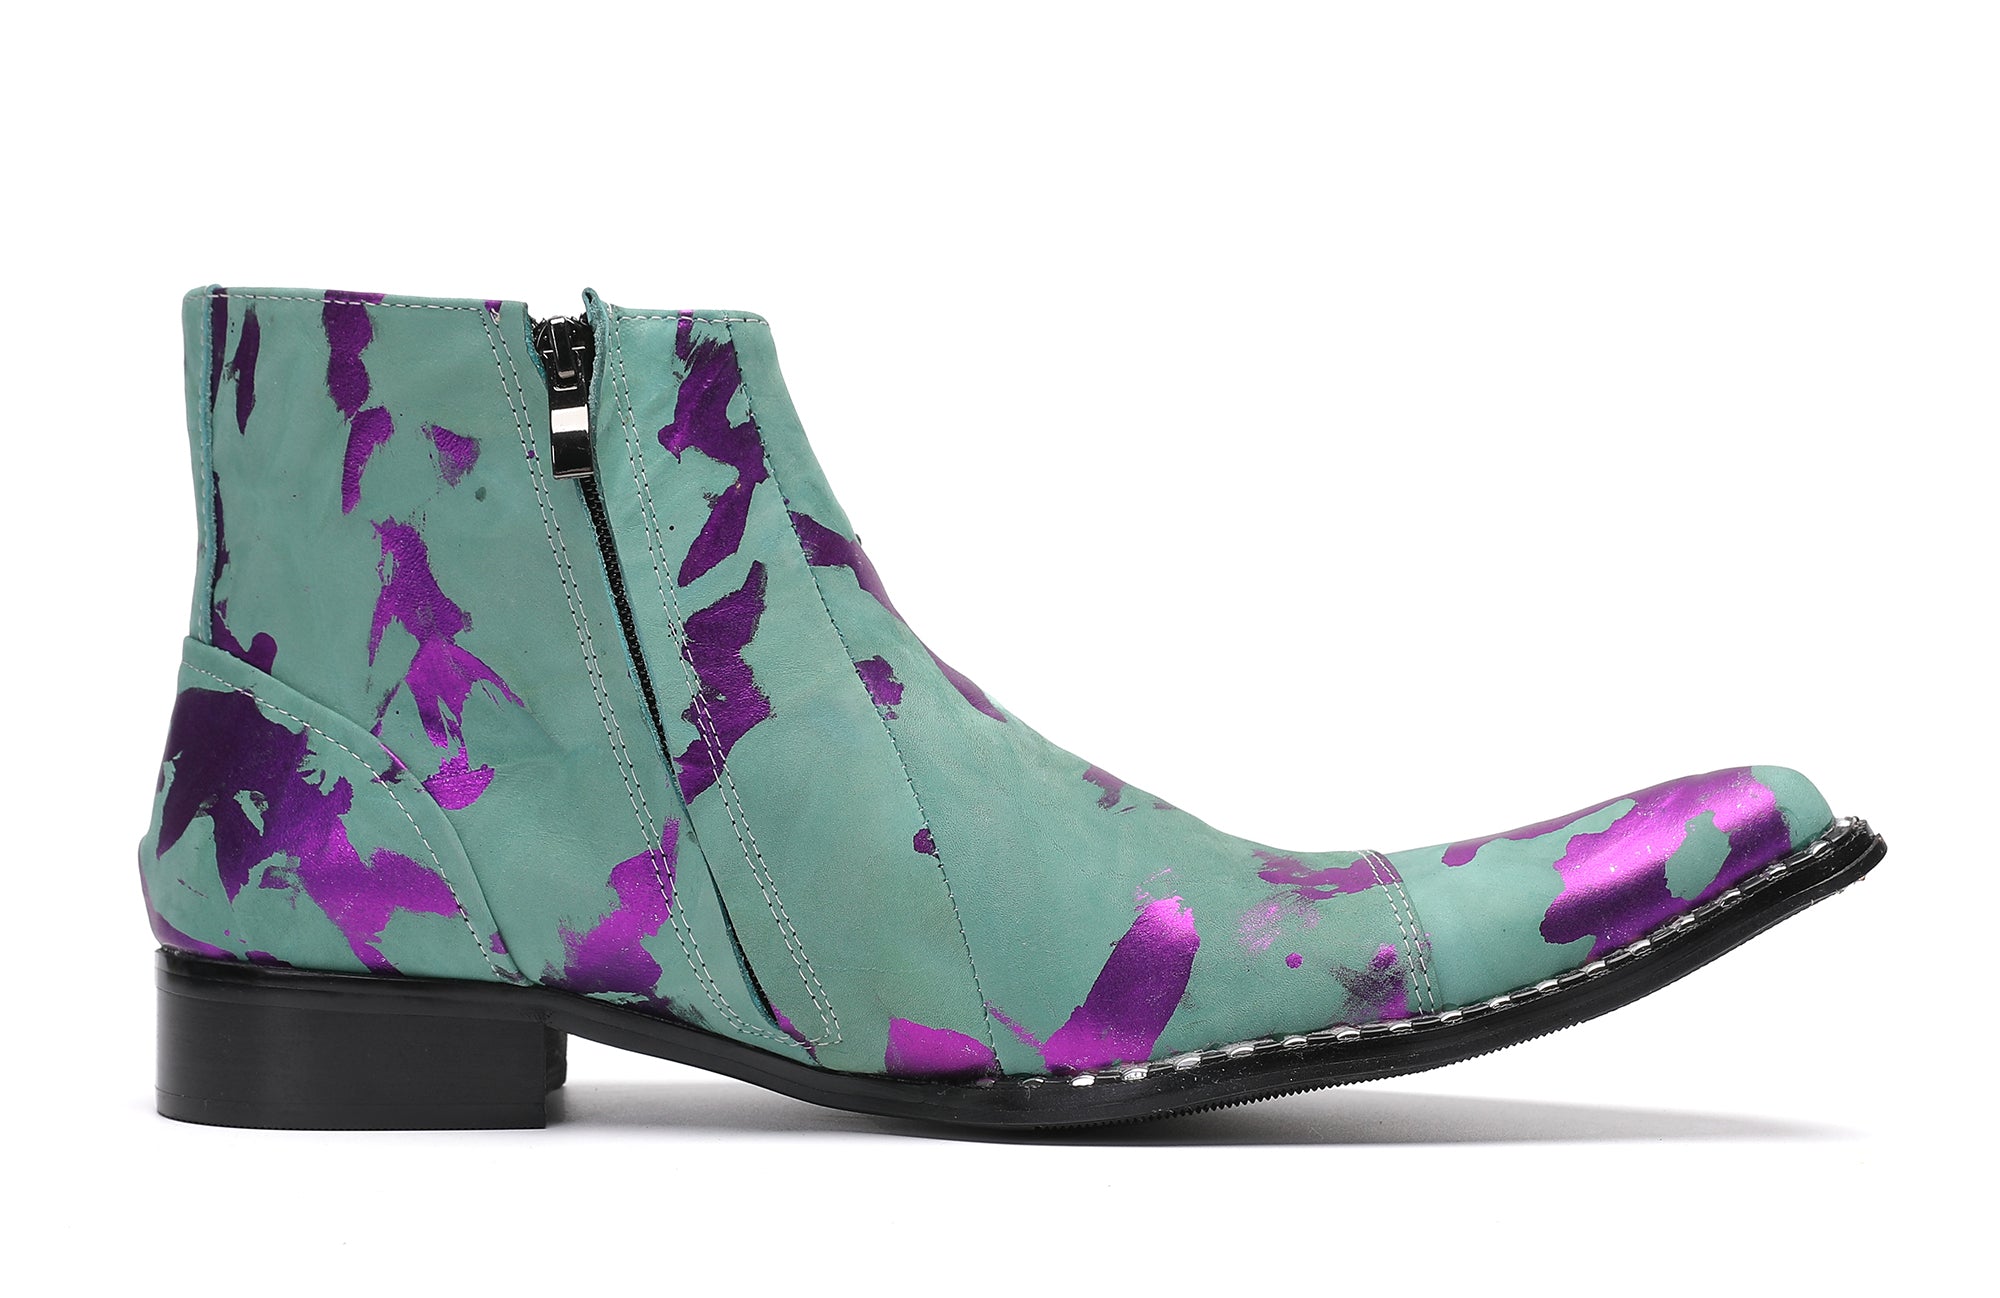 Men's Comfort Casual Western Boots